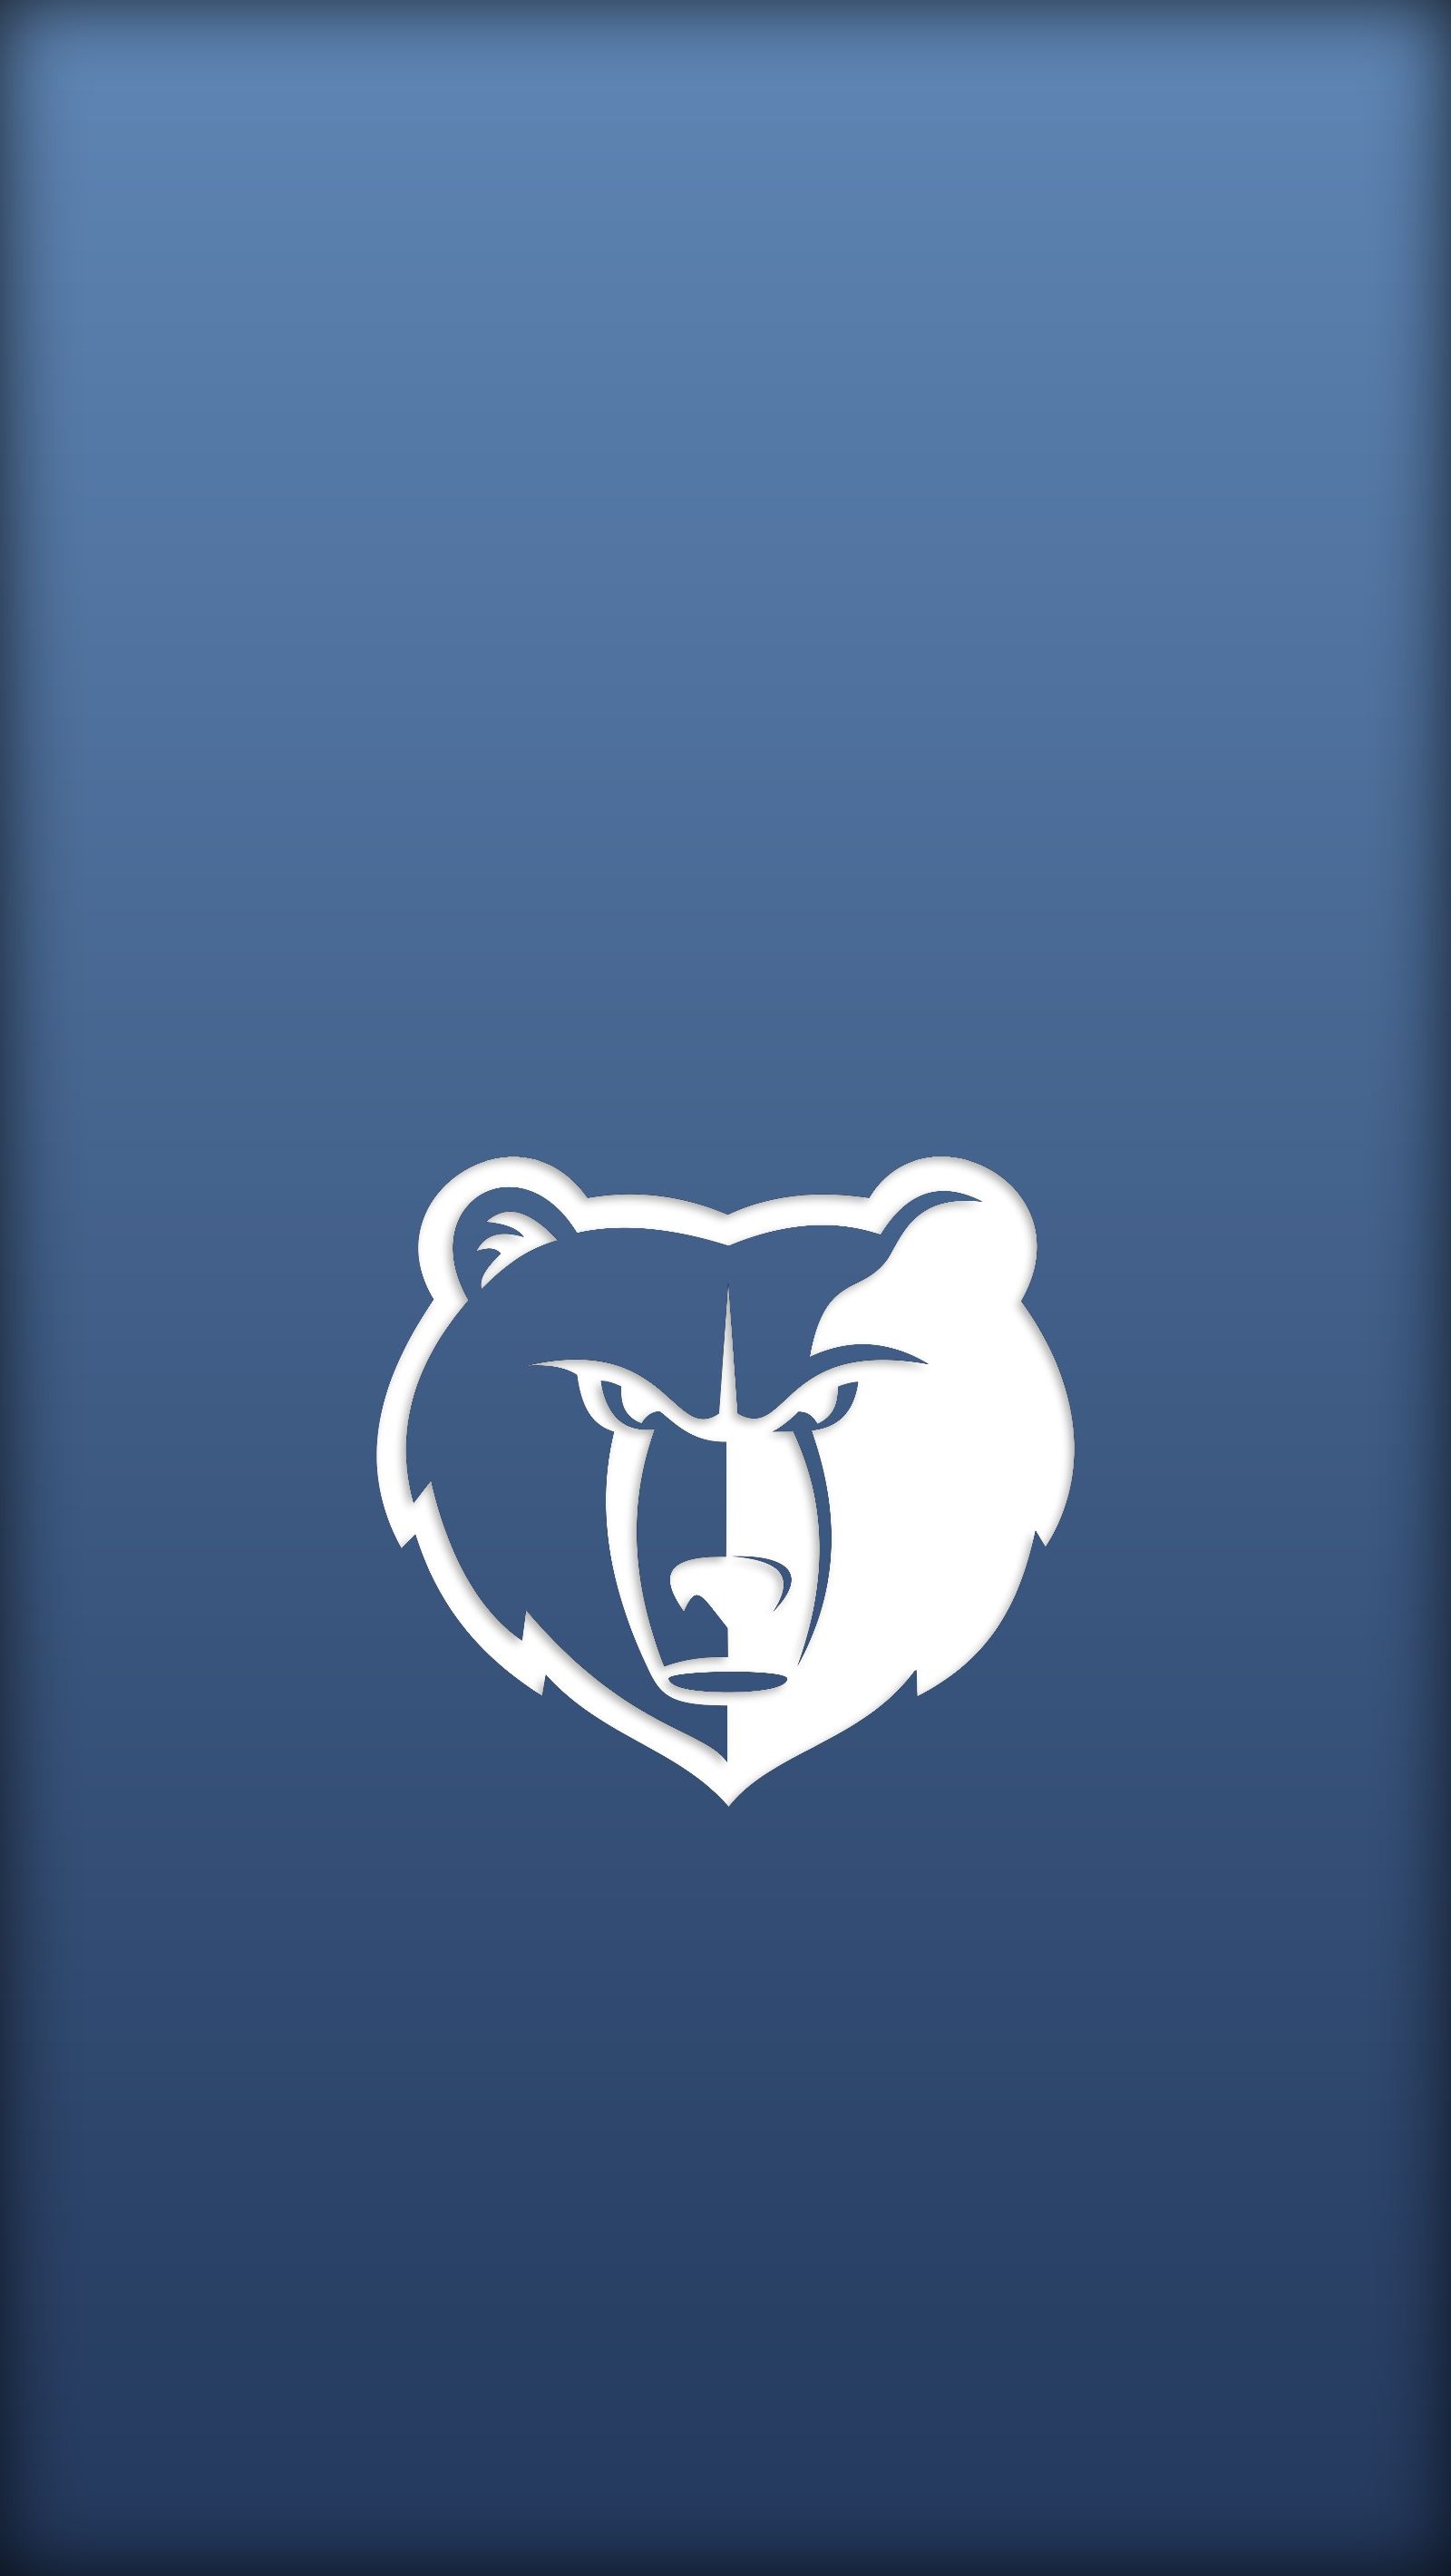 Memphis Grizzlies, Logo wallpapers, Desktop backgrounds, Grizzlies branding, 1600x2840 HD Handy